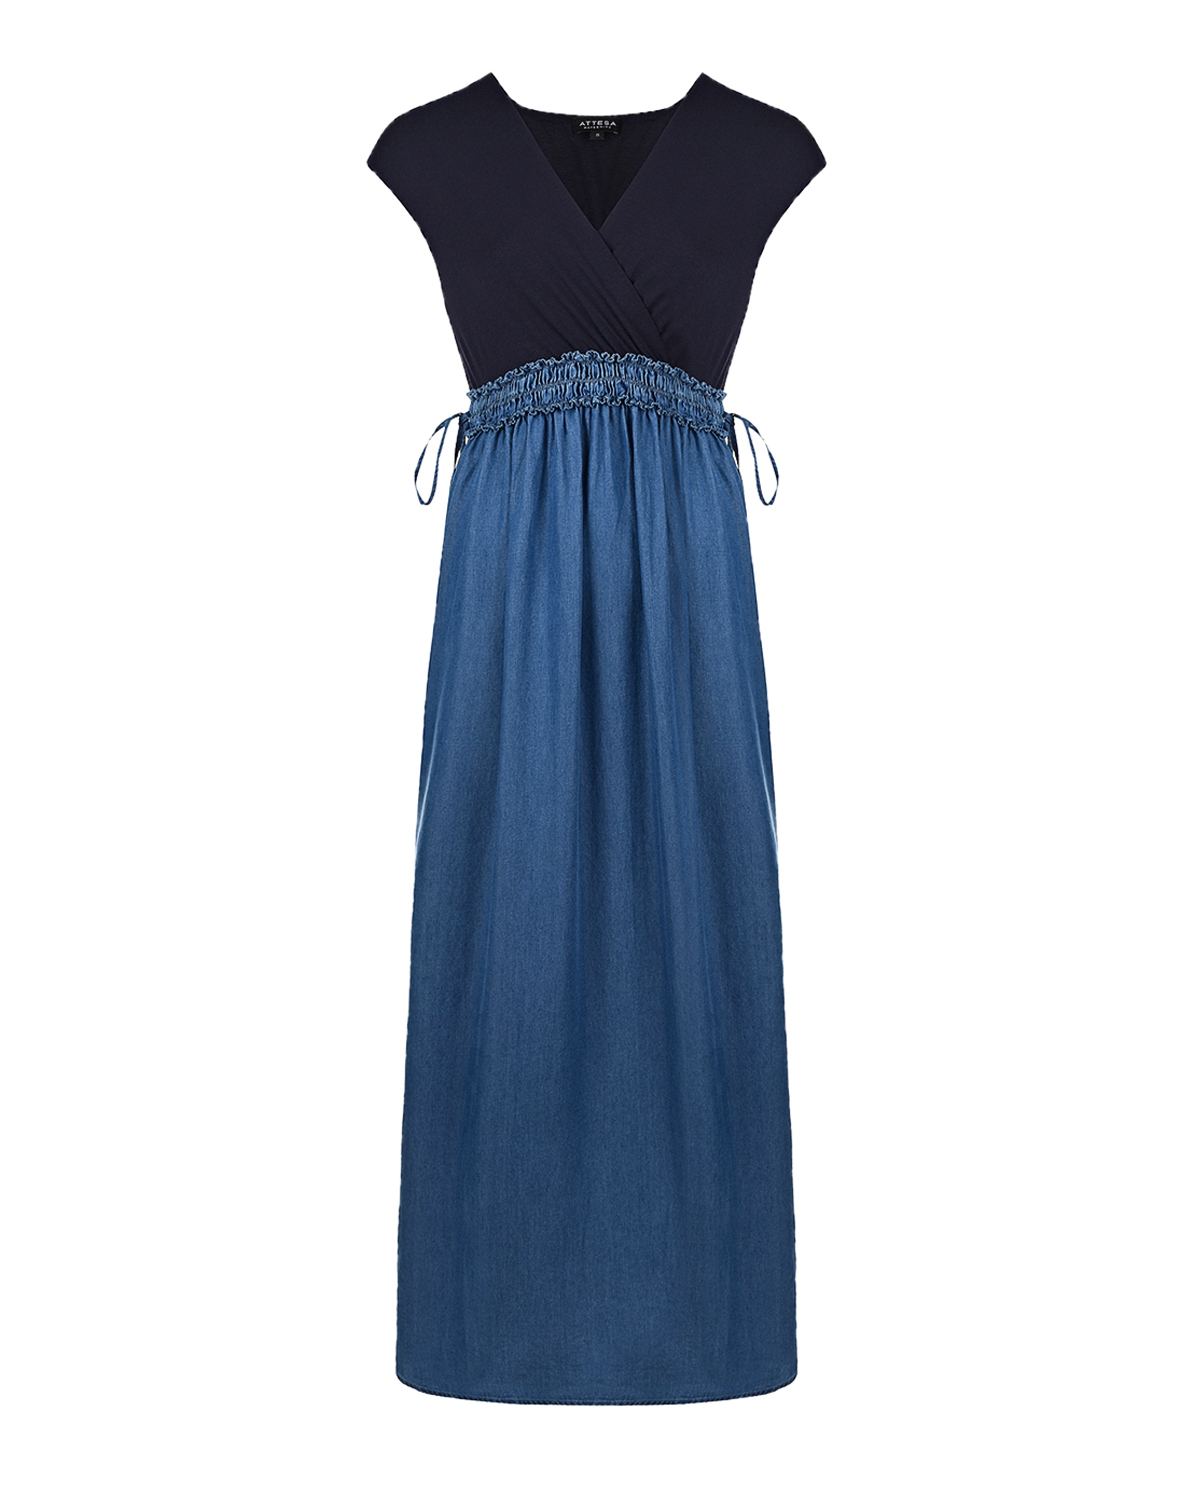 Платье с джинсовой юбкой Attesa, размер 38, цвет синий - фото 1